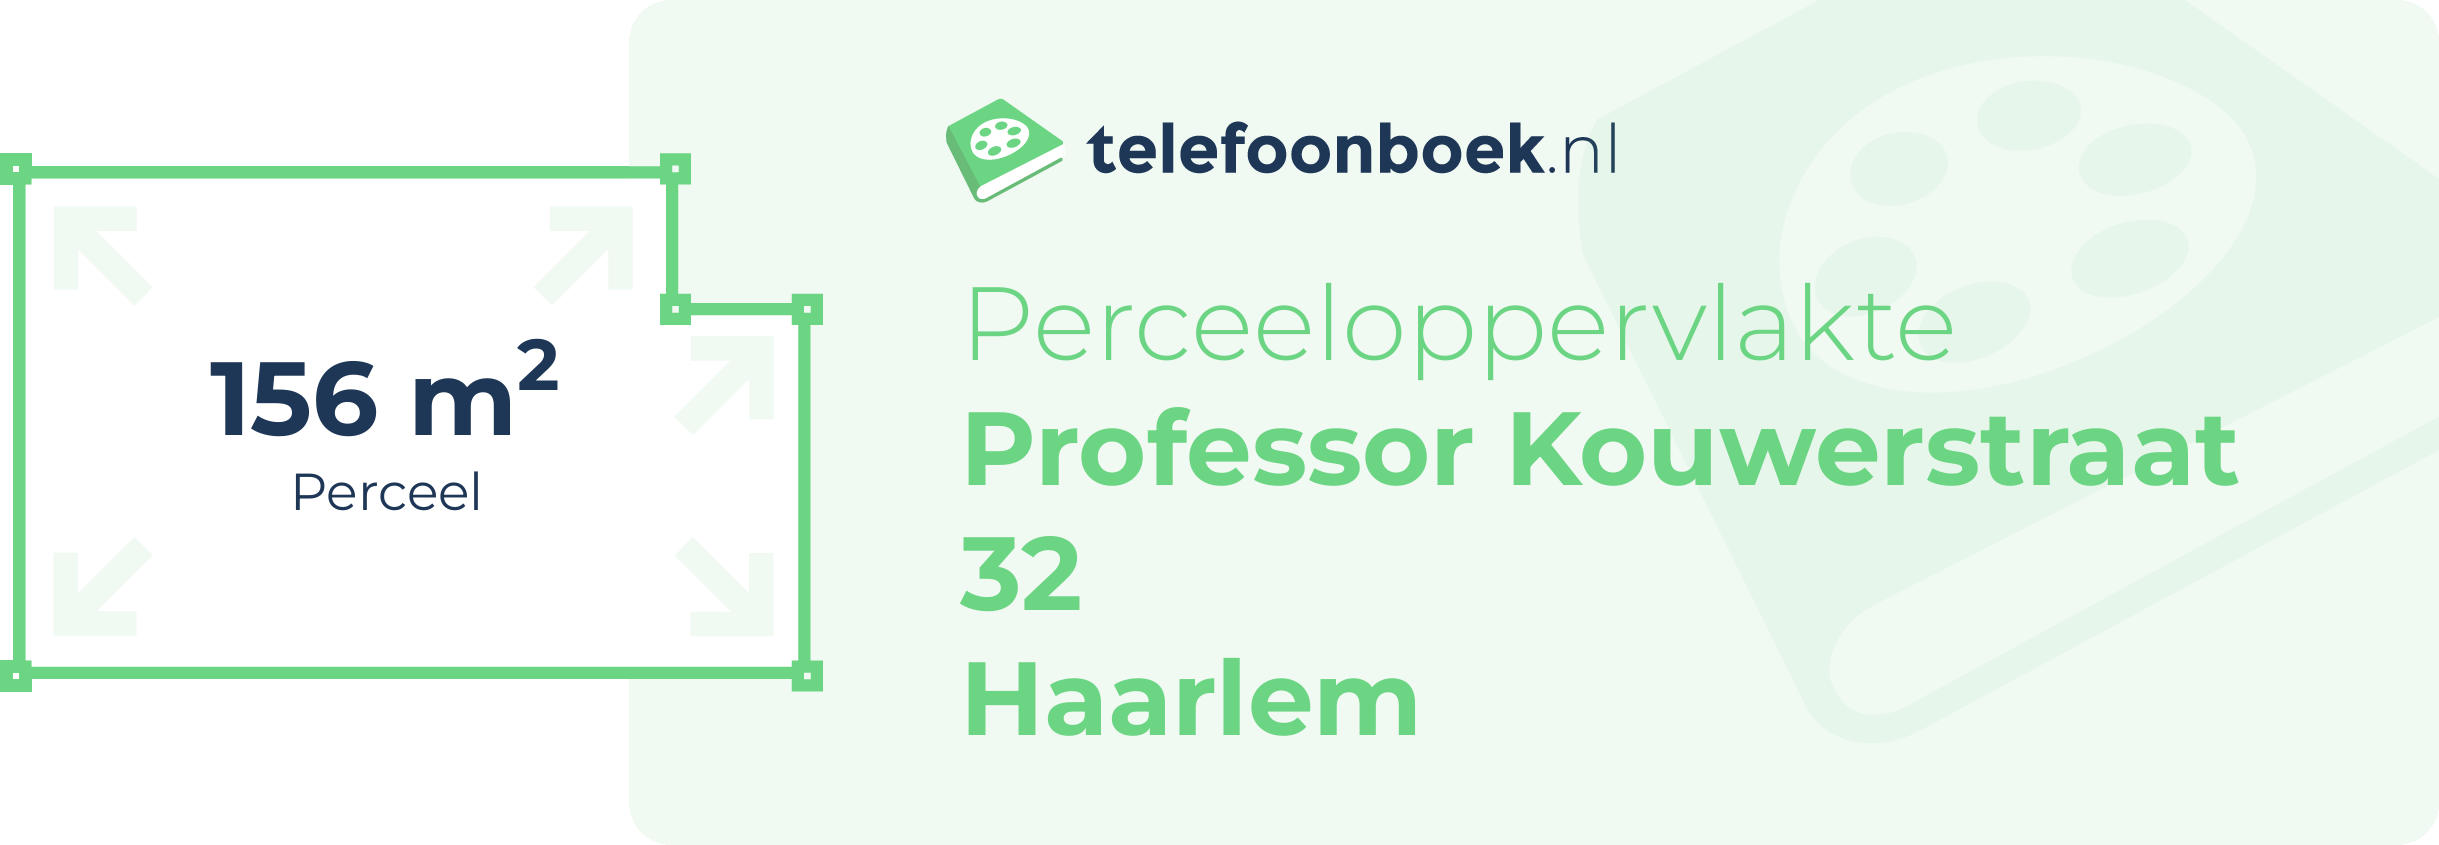 Perceeloppervlakte Professor Kouwerstraat 32 Haarlem